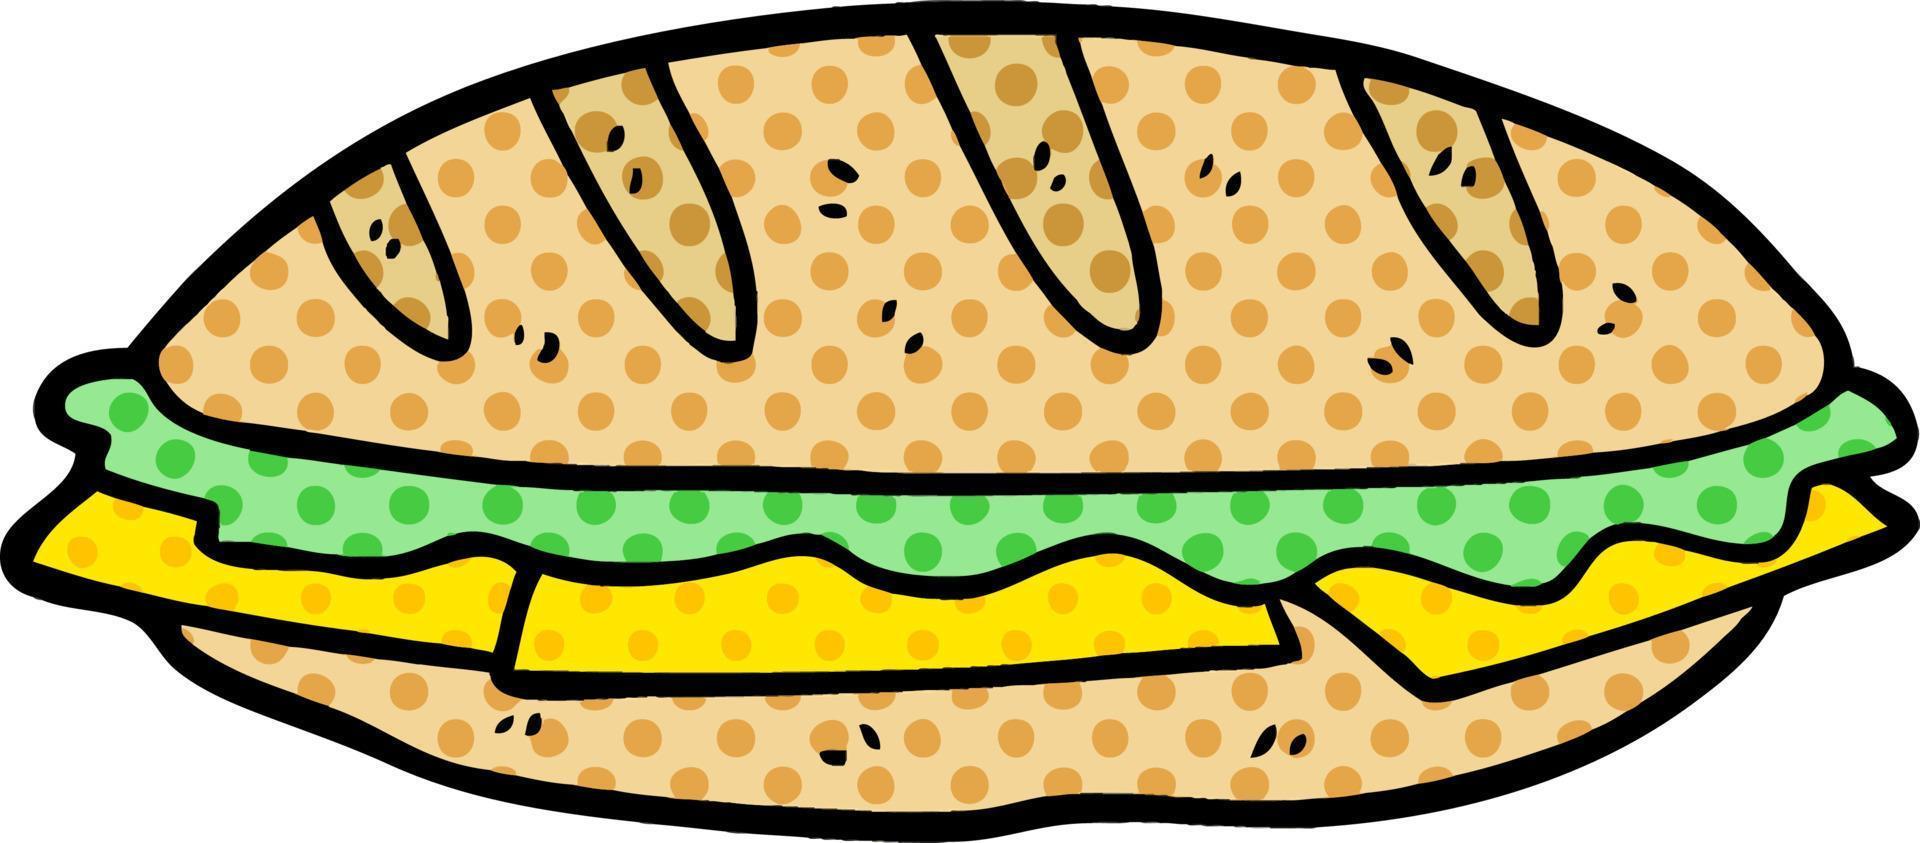 sandwich au fromage de dessin animé vecteur